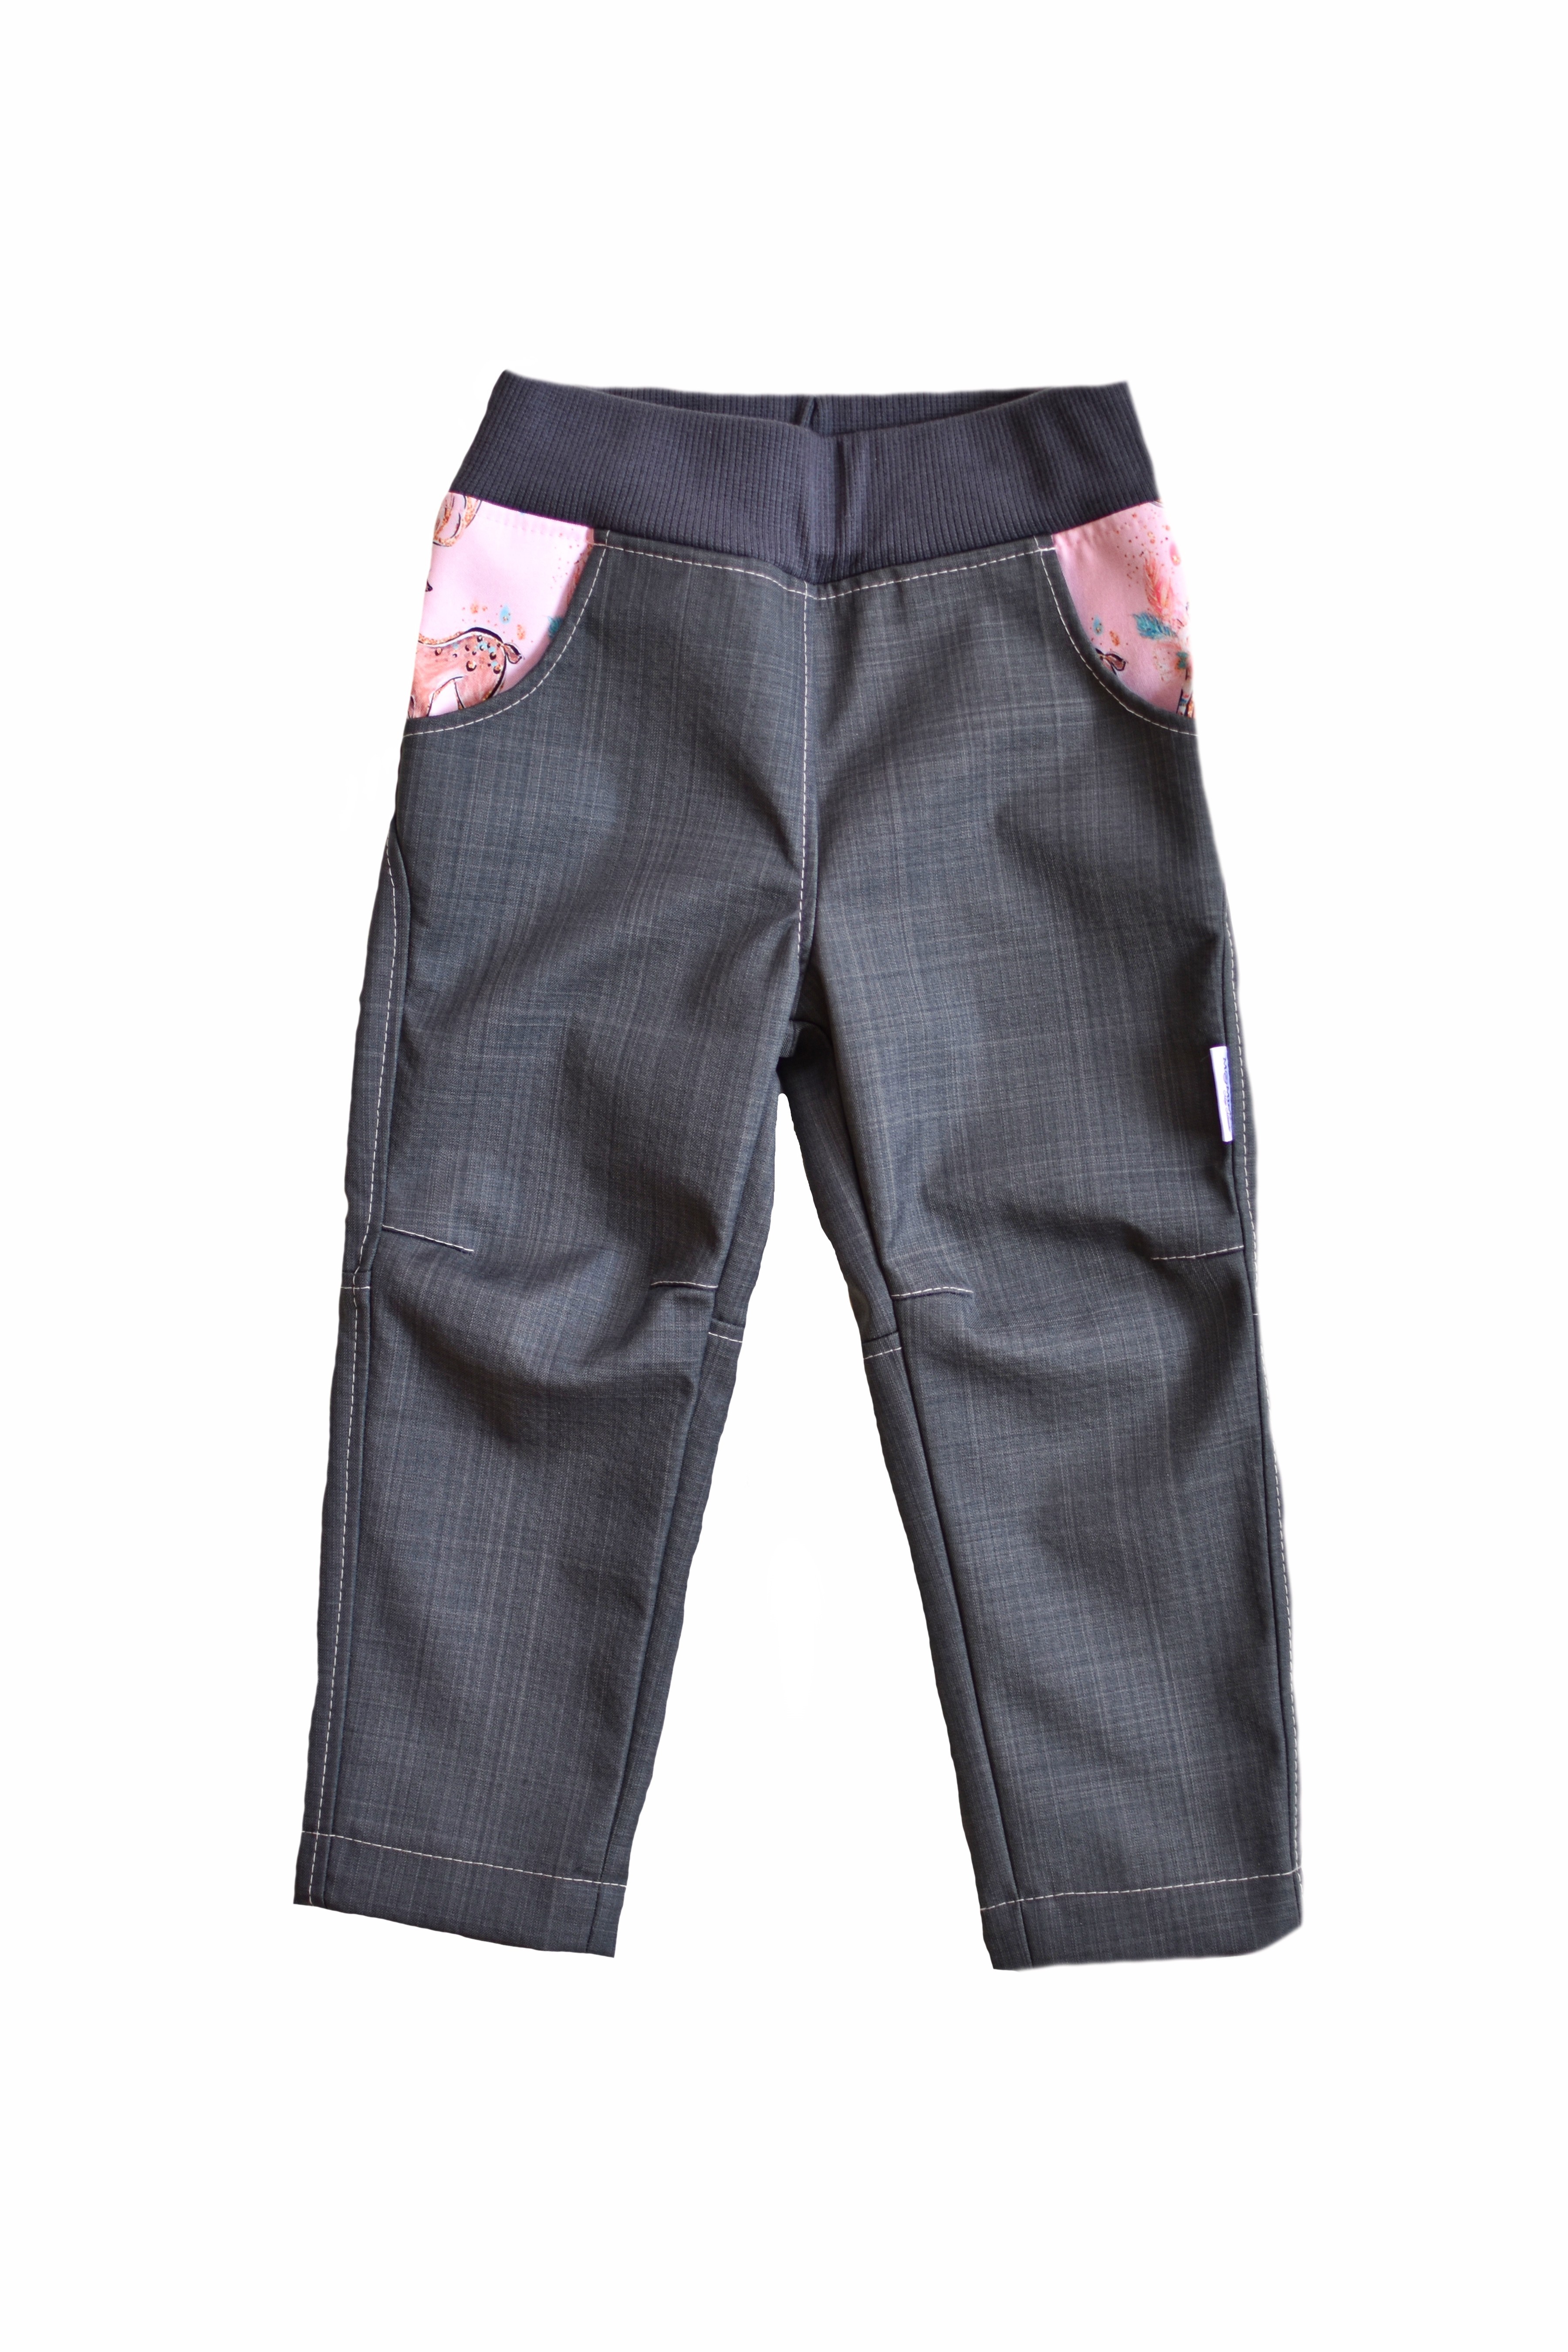 Šedé softshellové kalhoty jarní SLIM - 128